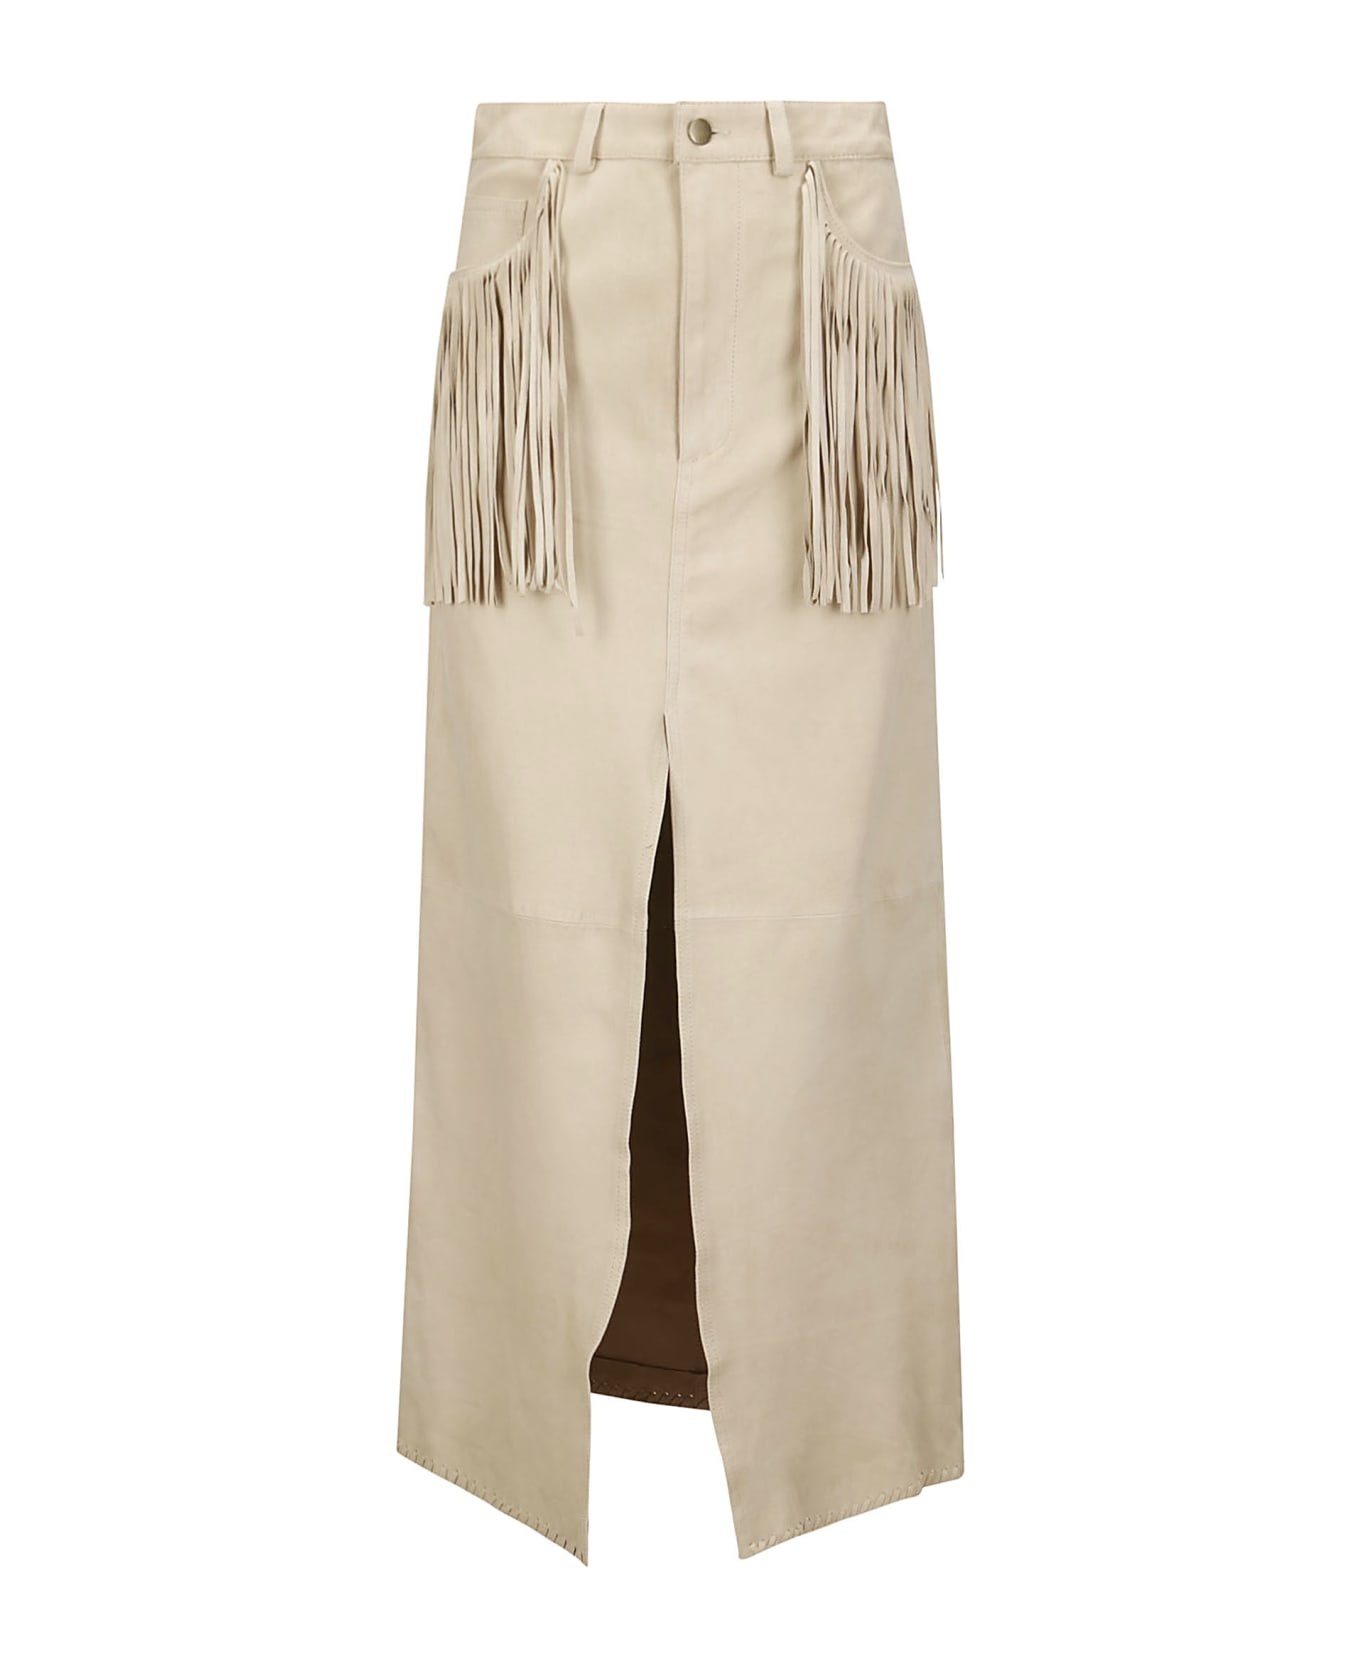 Wild Cashmere Fringed Long Skirt - DESERT BEIGE